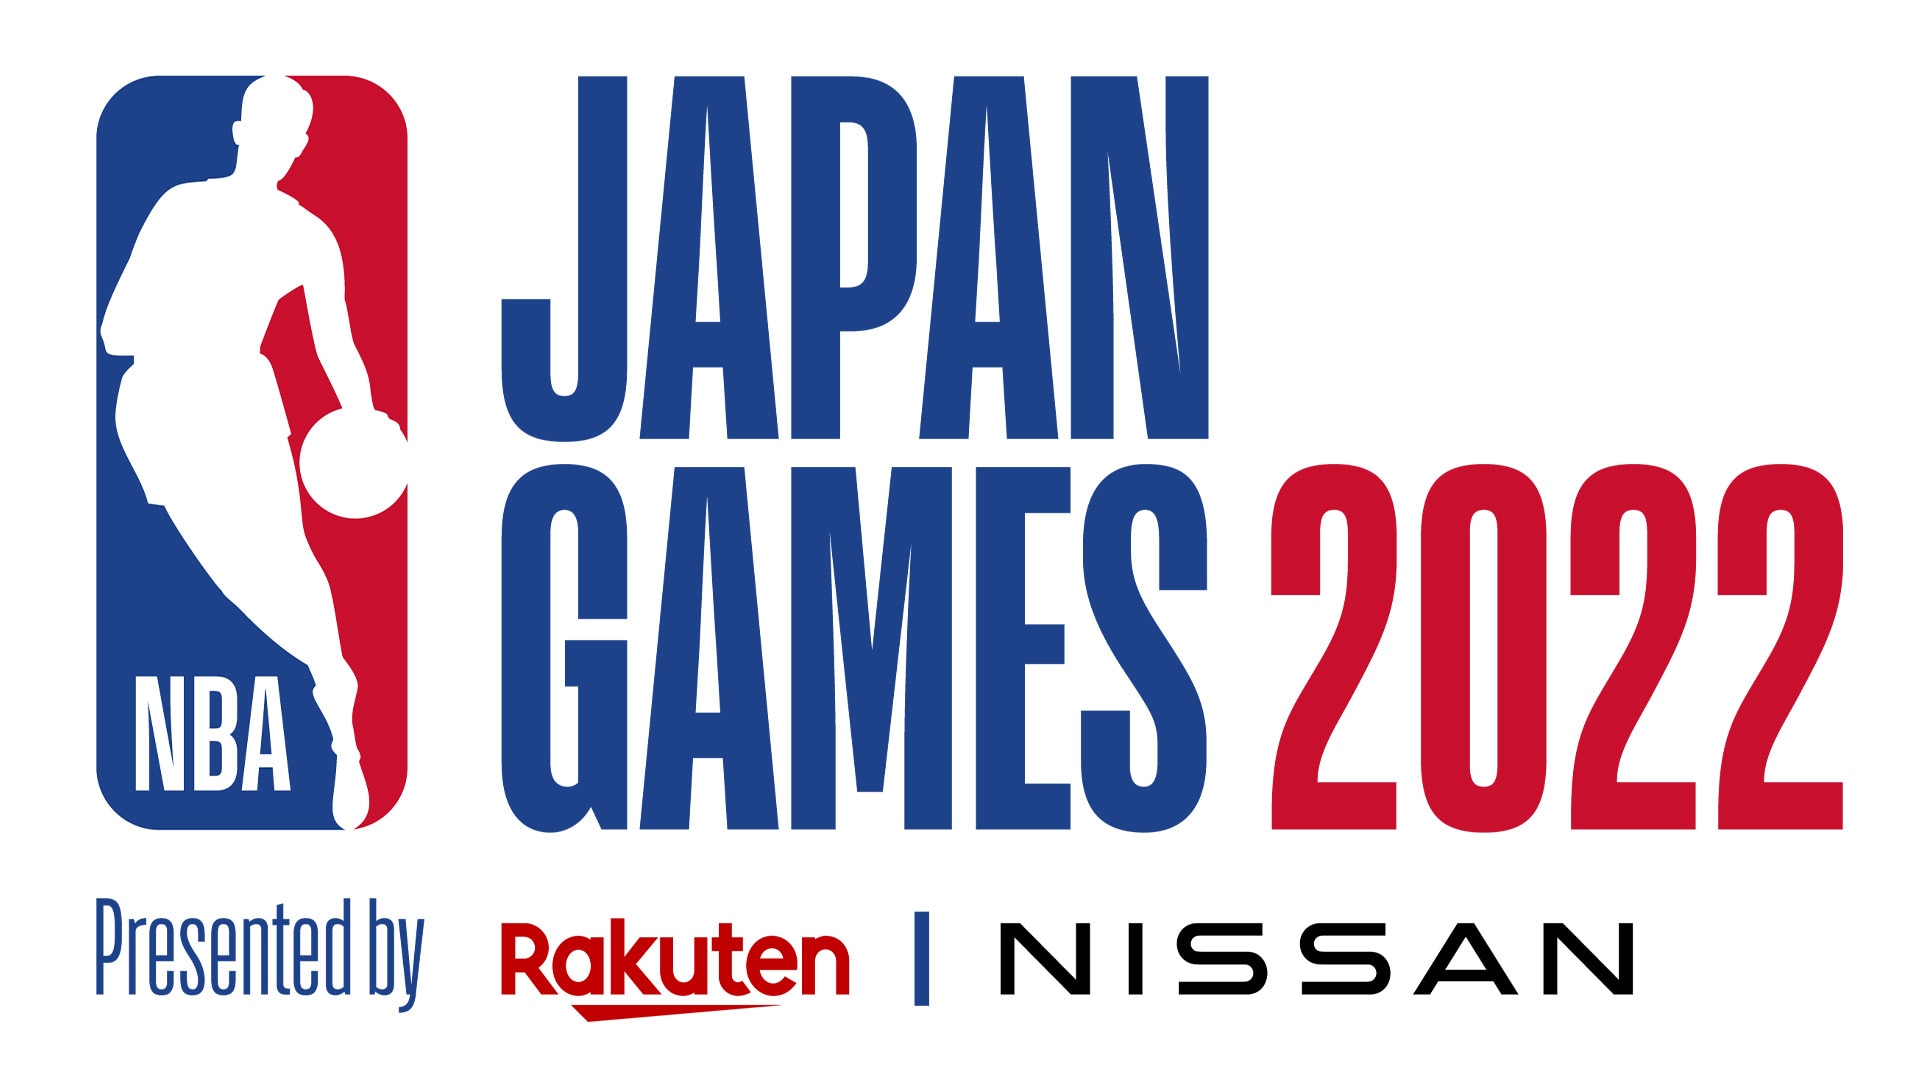 【お知らせ】「NBA Japan Games 2022」チケット発券開始日時変更のご案内